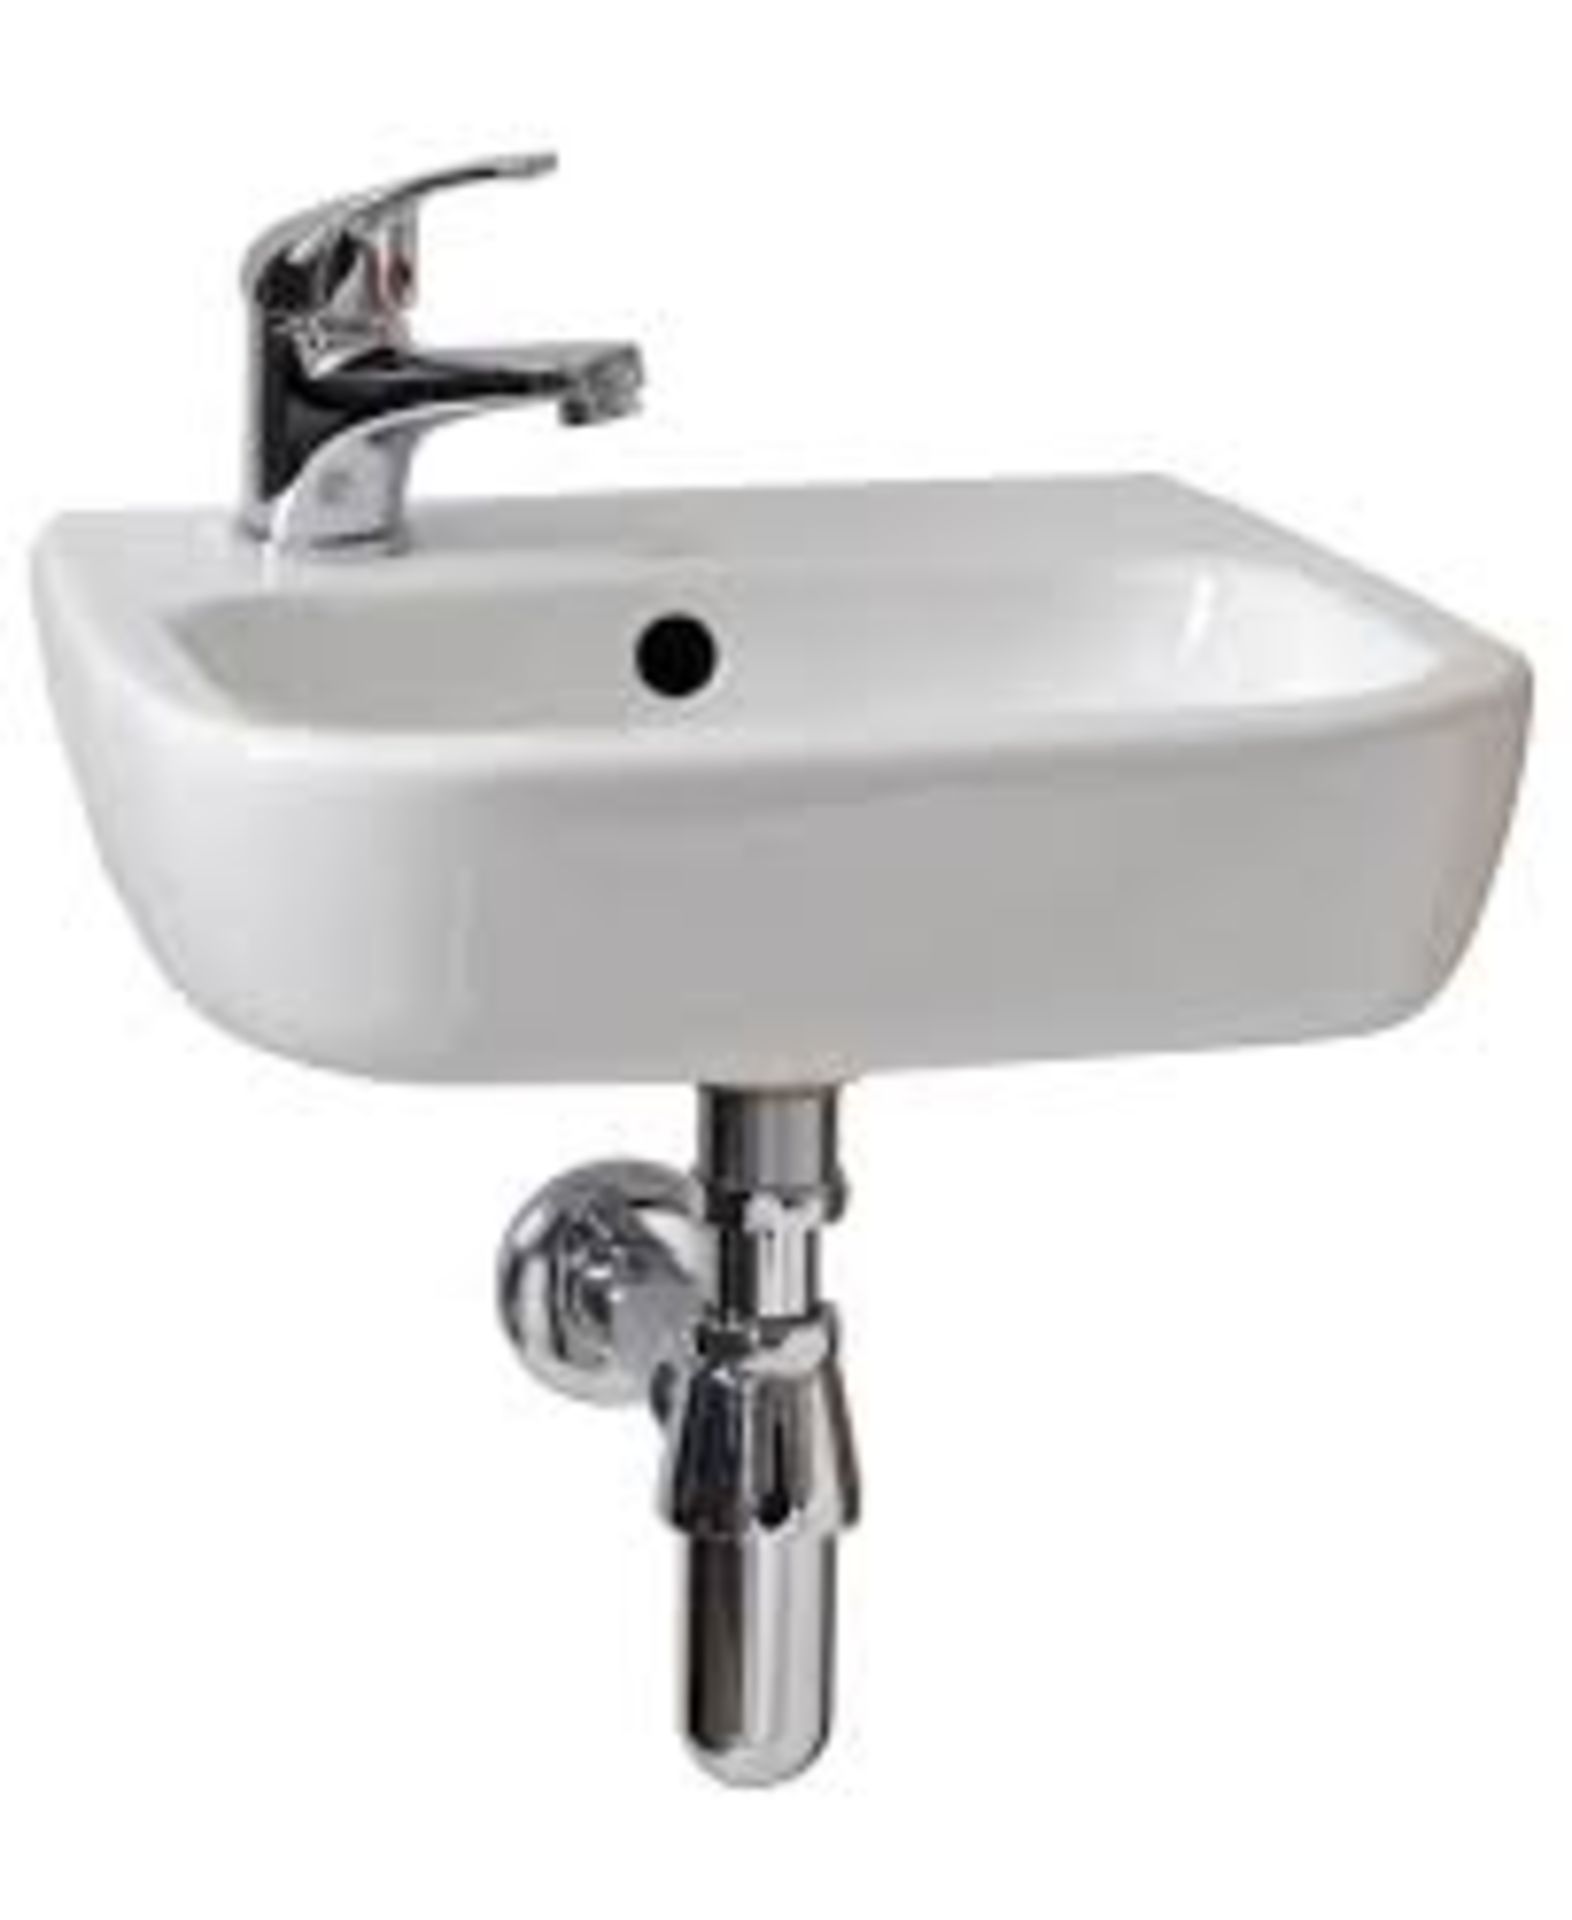 Pallet - 442 - 13 x Facile 40cm Left hand basin - SKU - 470156 RRP £389.87